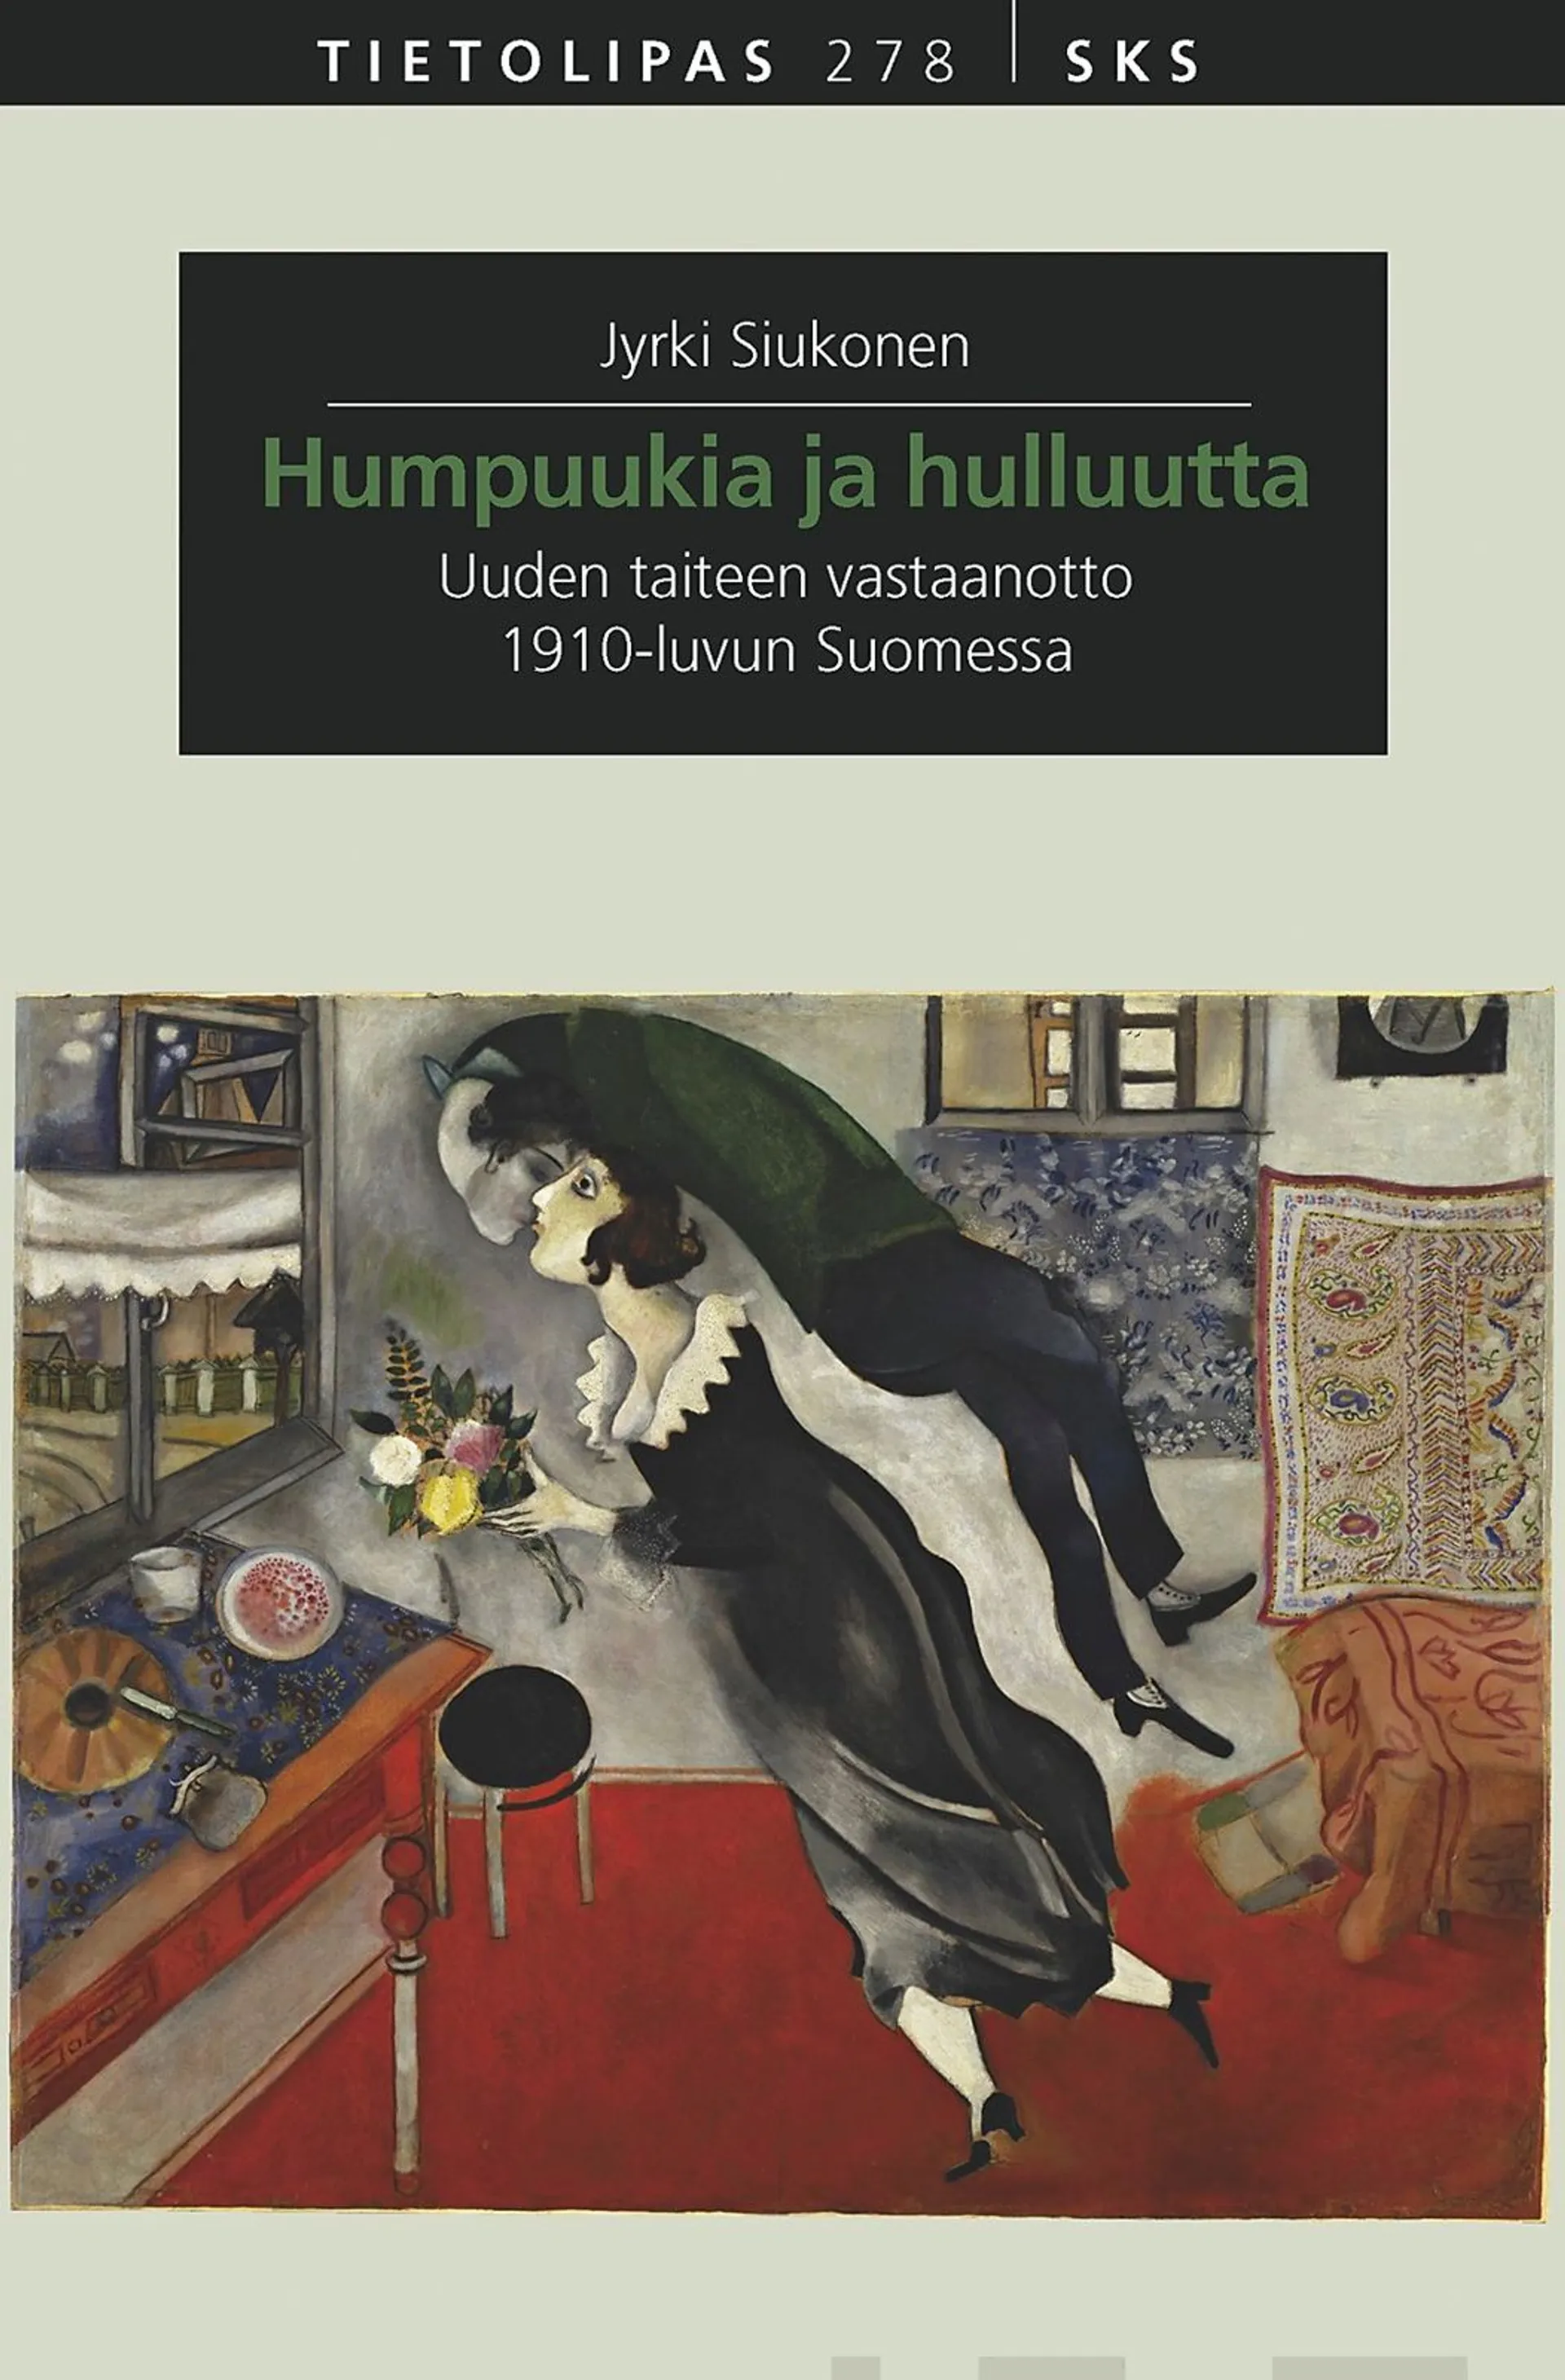 Siukonen, Humpuukia ja hulluutta - Uuden taiteen vastaanotto 1910-luvun Suomessa